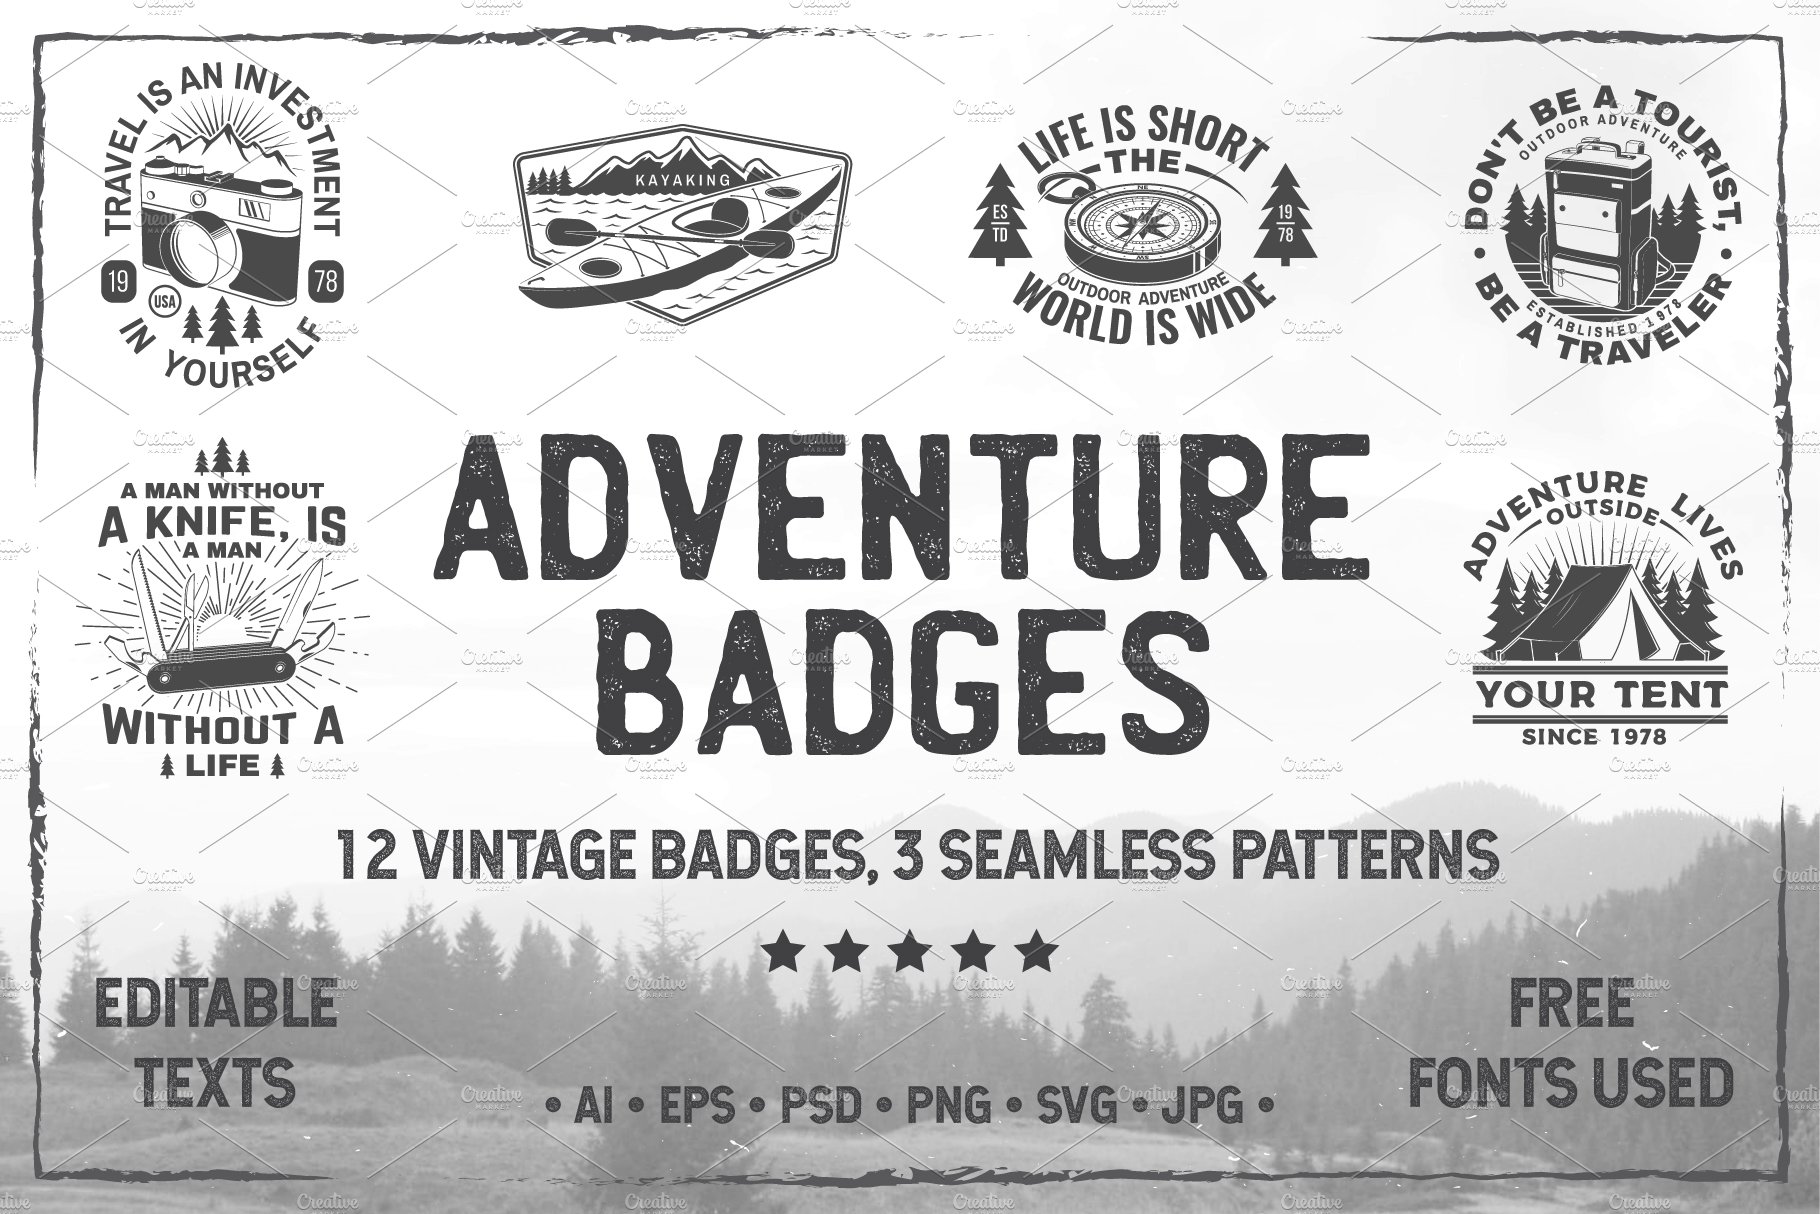 Adventure Badges + Bonus cover image.